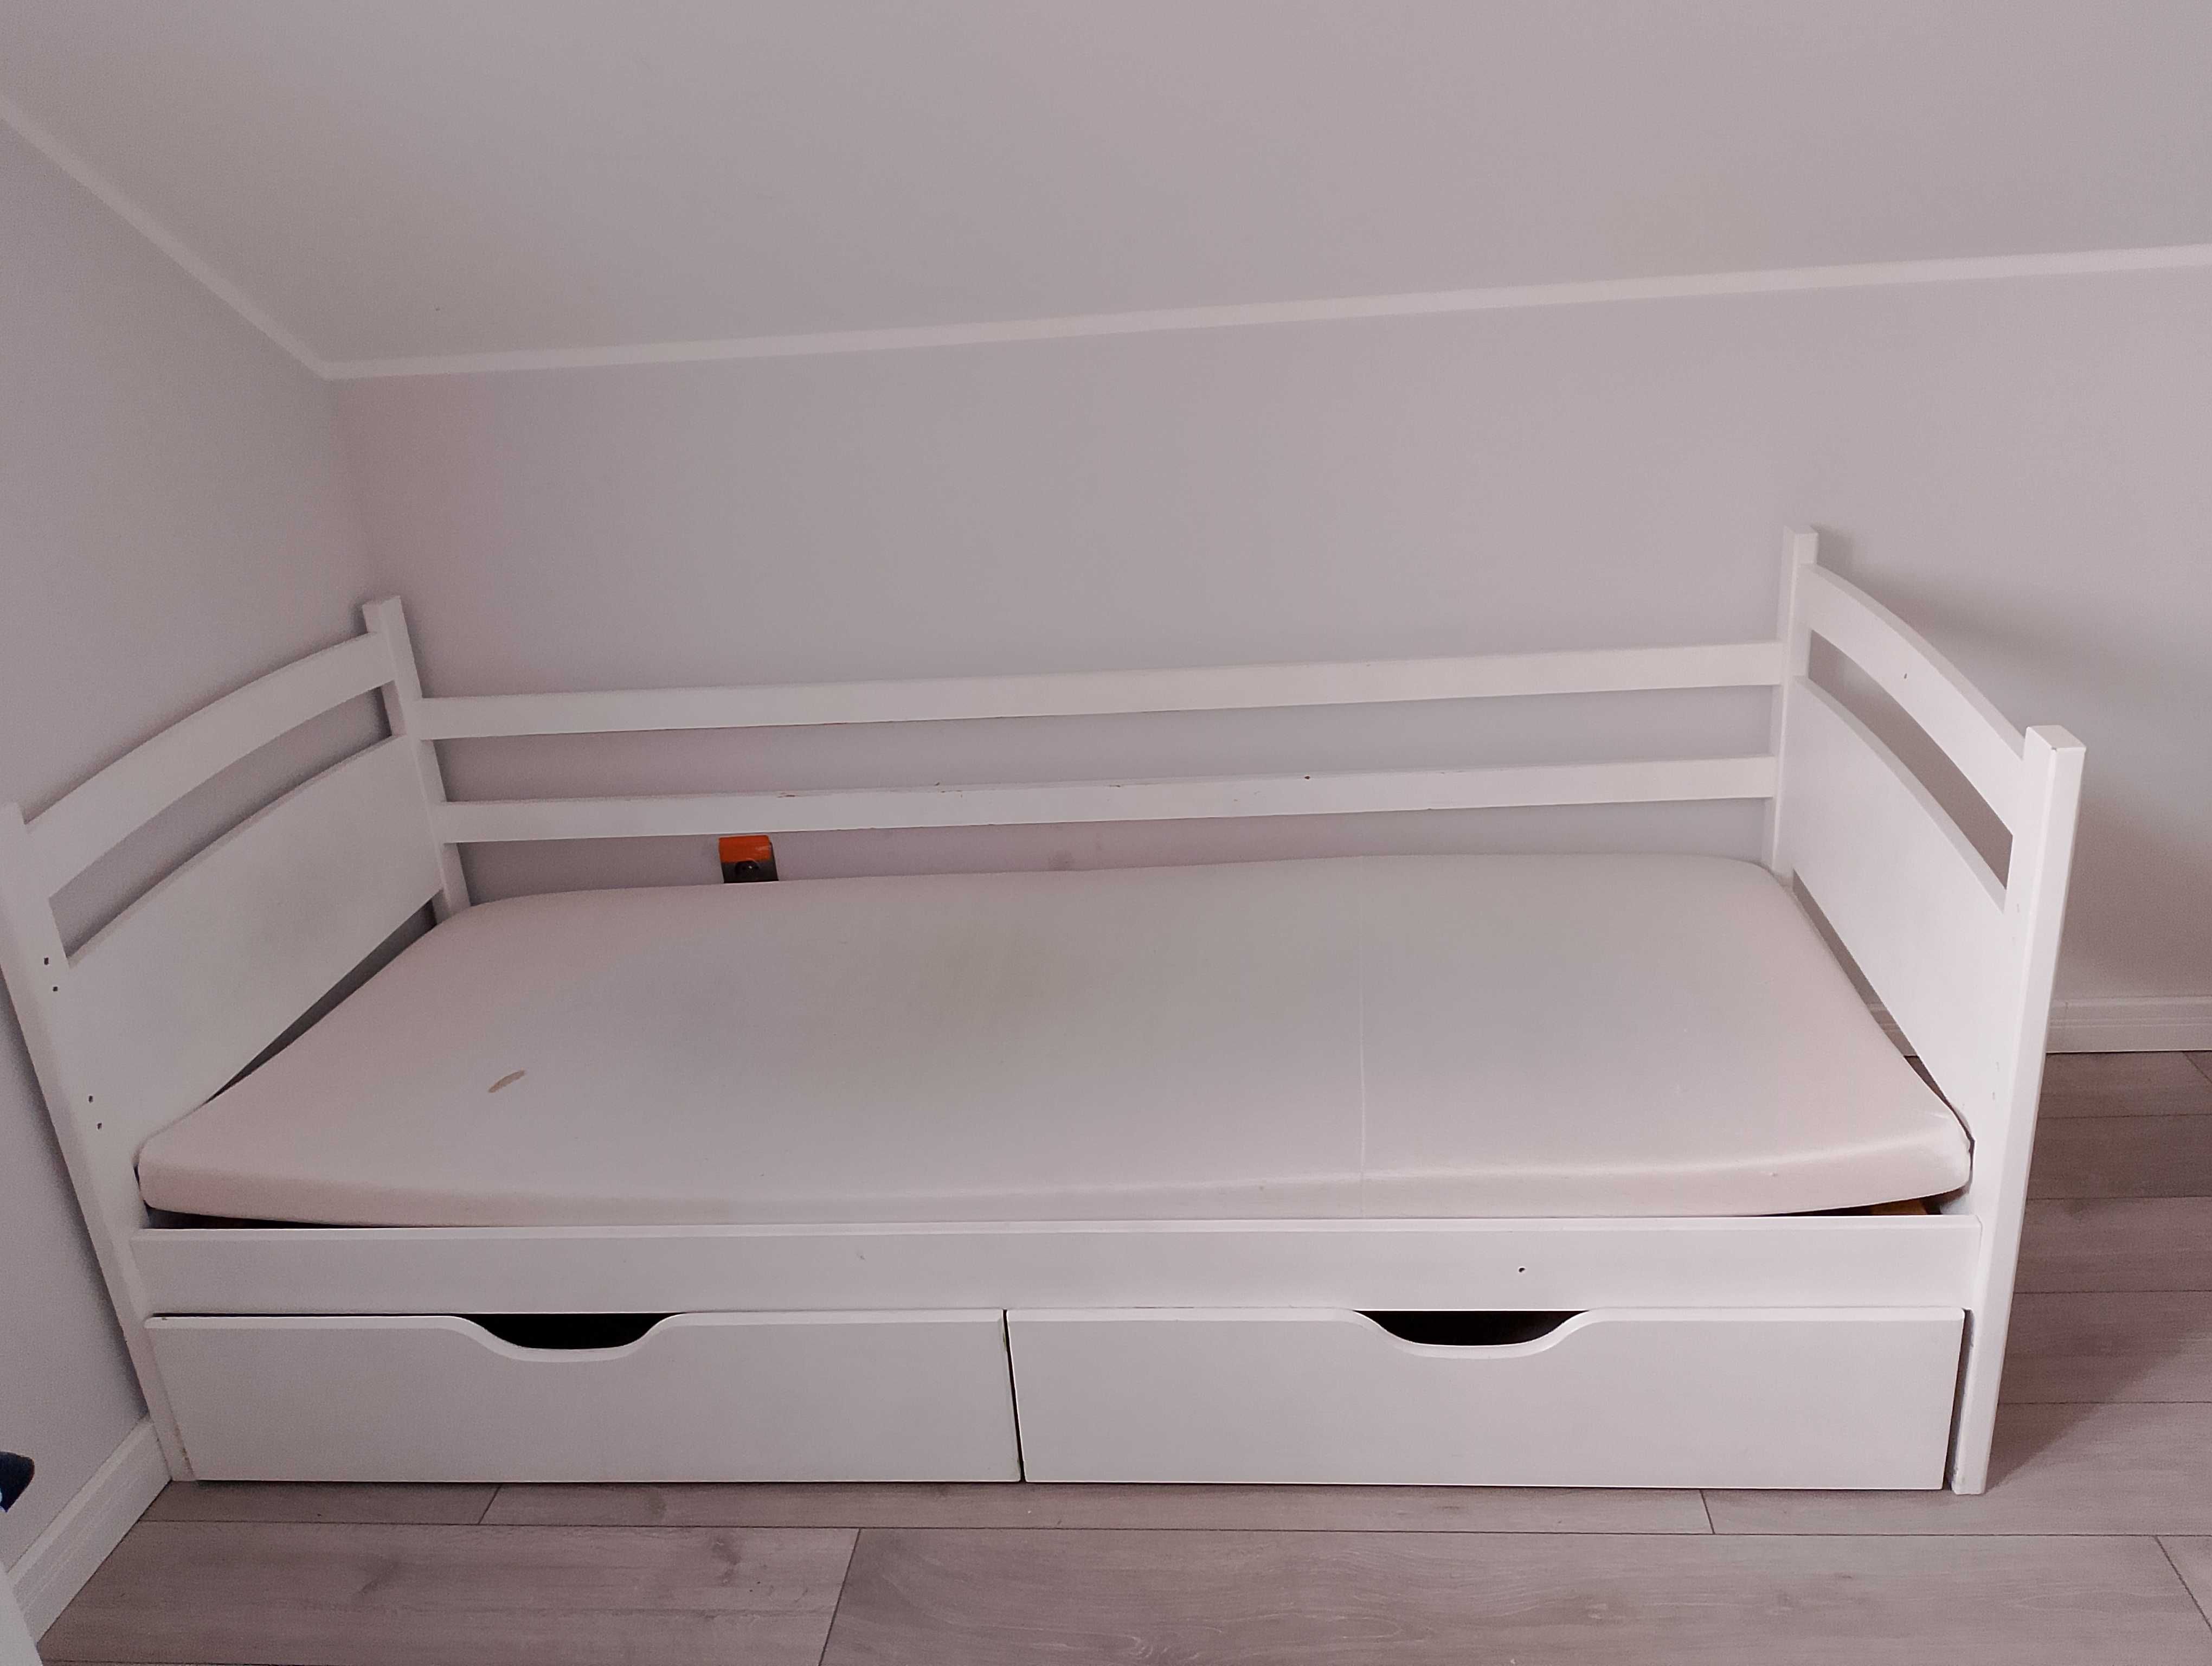 Łóżko drewniane białe